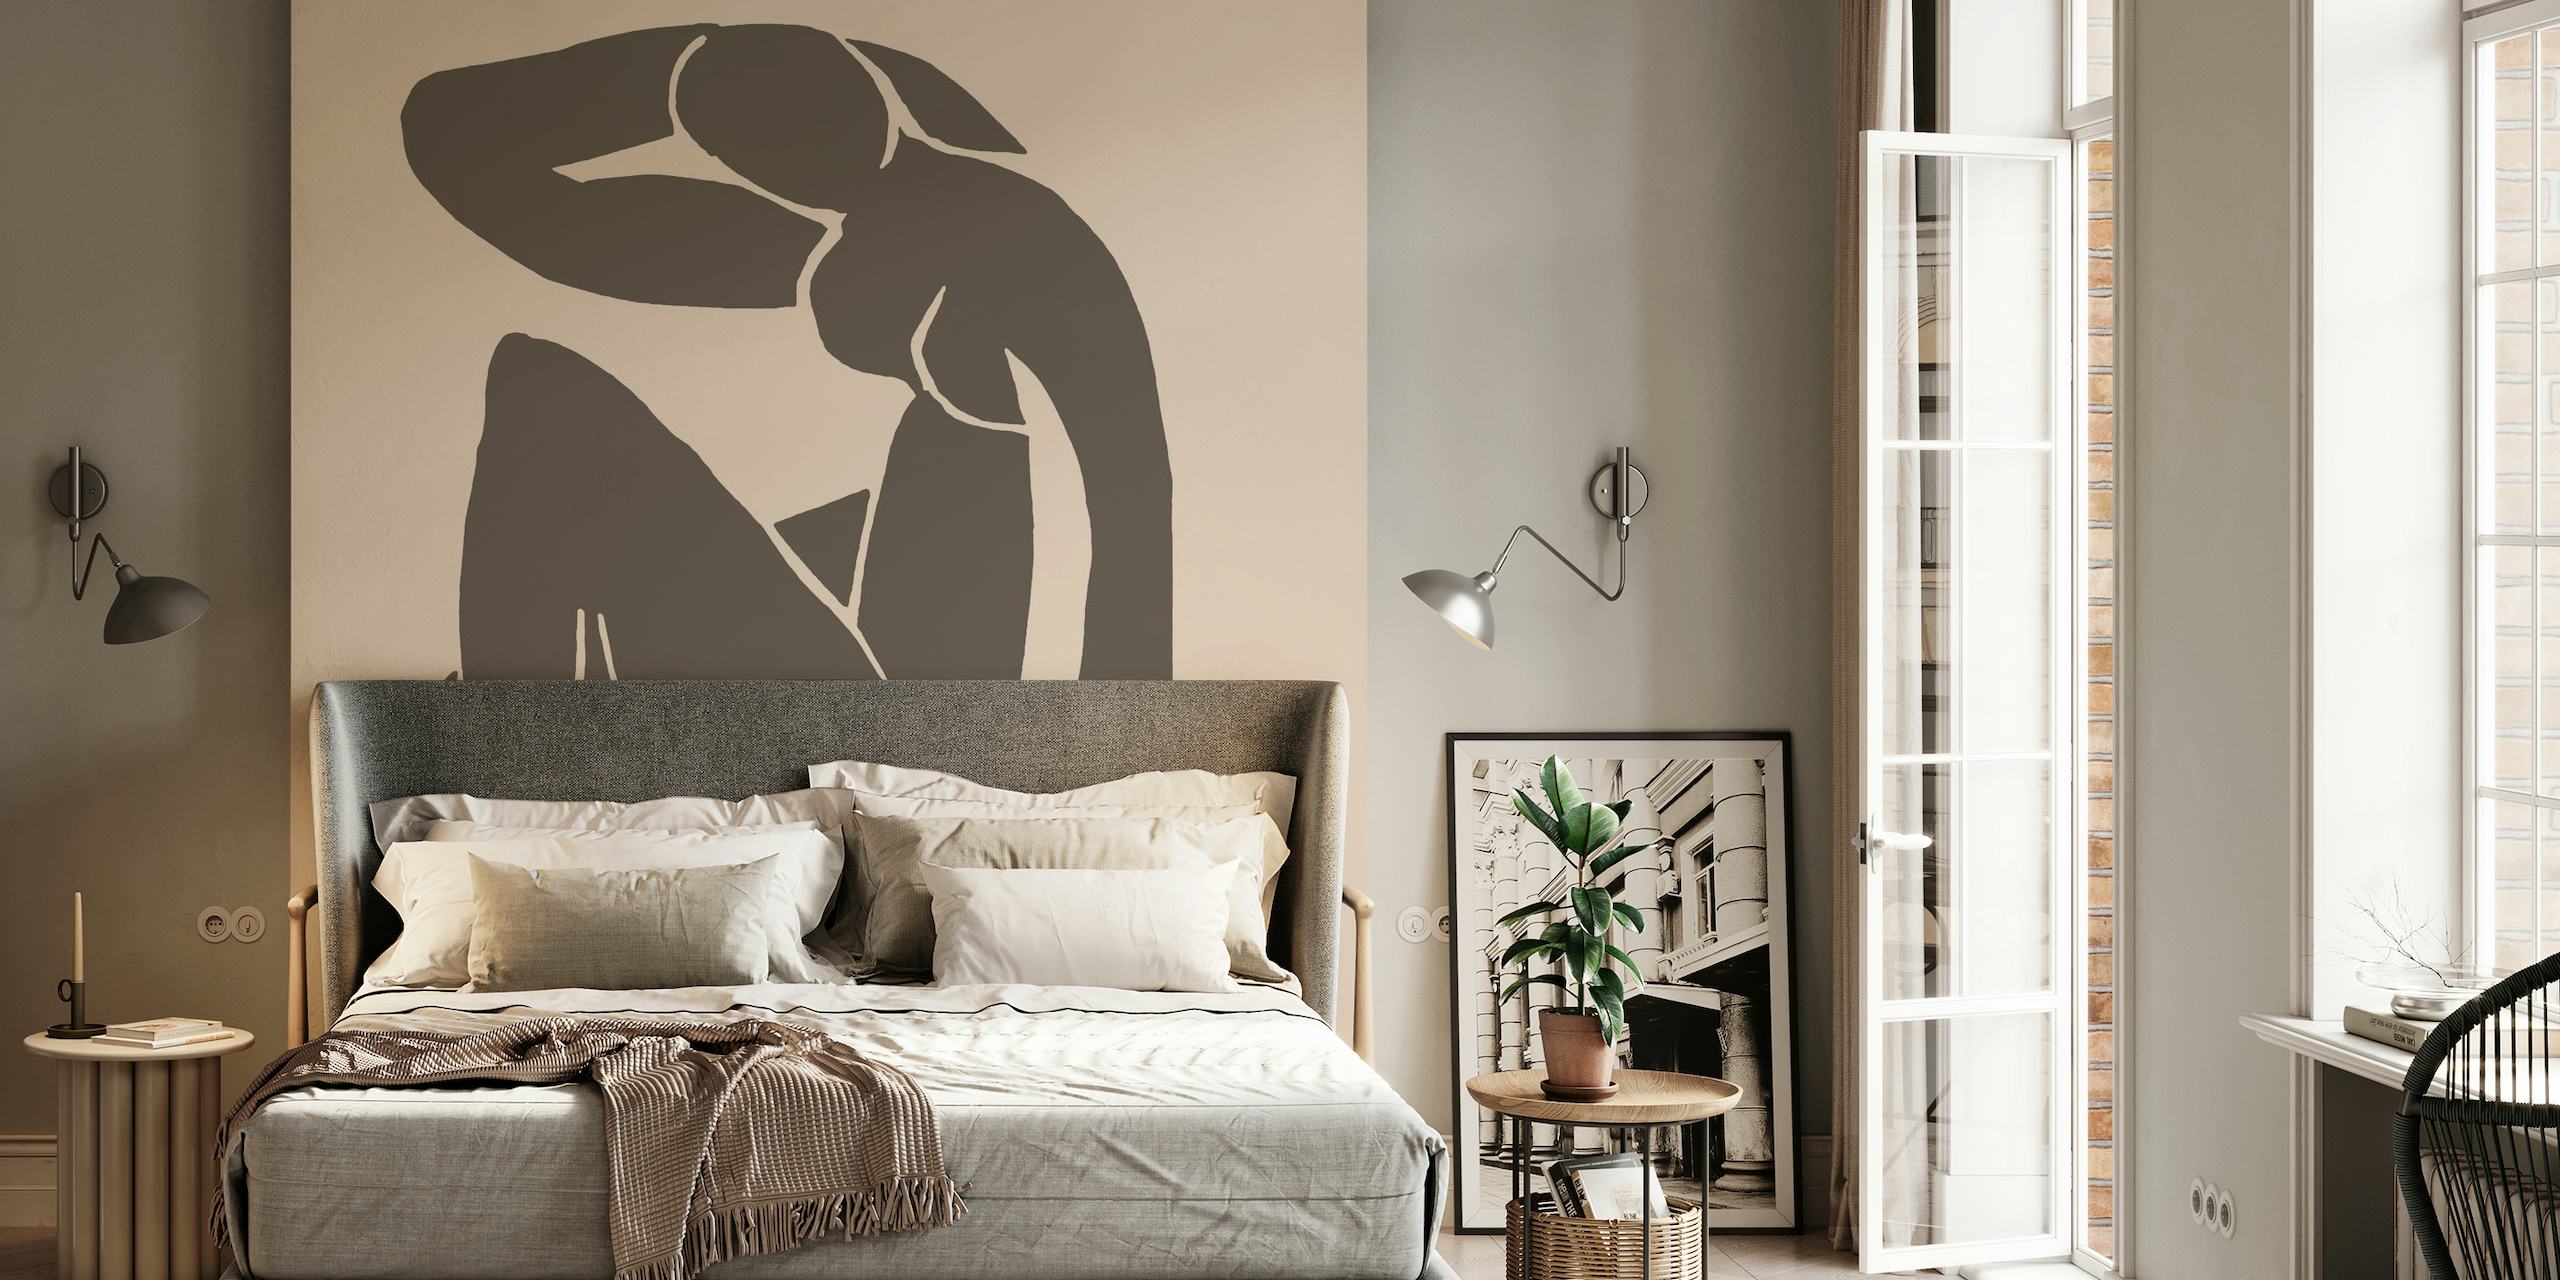 Bež Nude silueta zidna slika inspirirana Matisseovim minimalističkim stilom